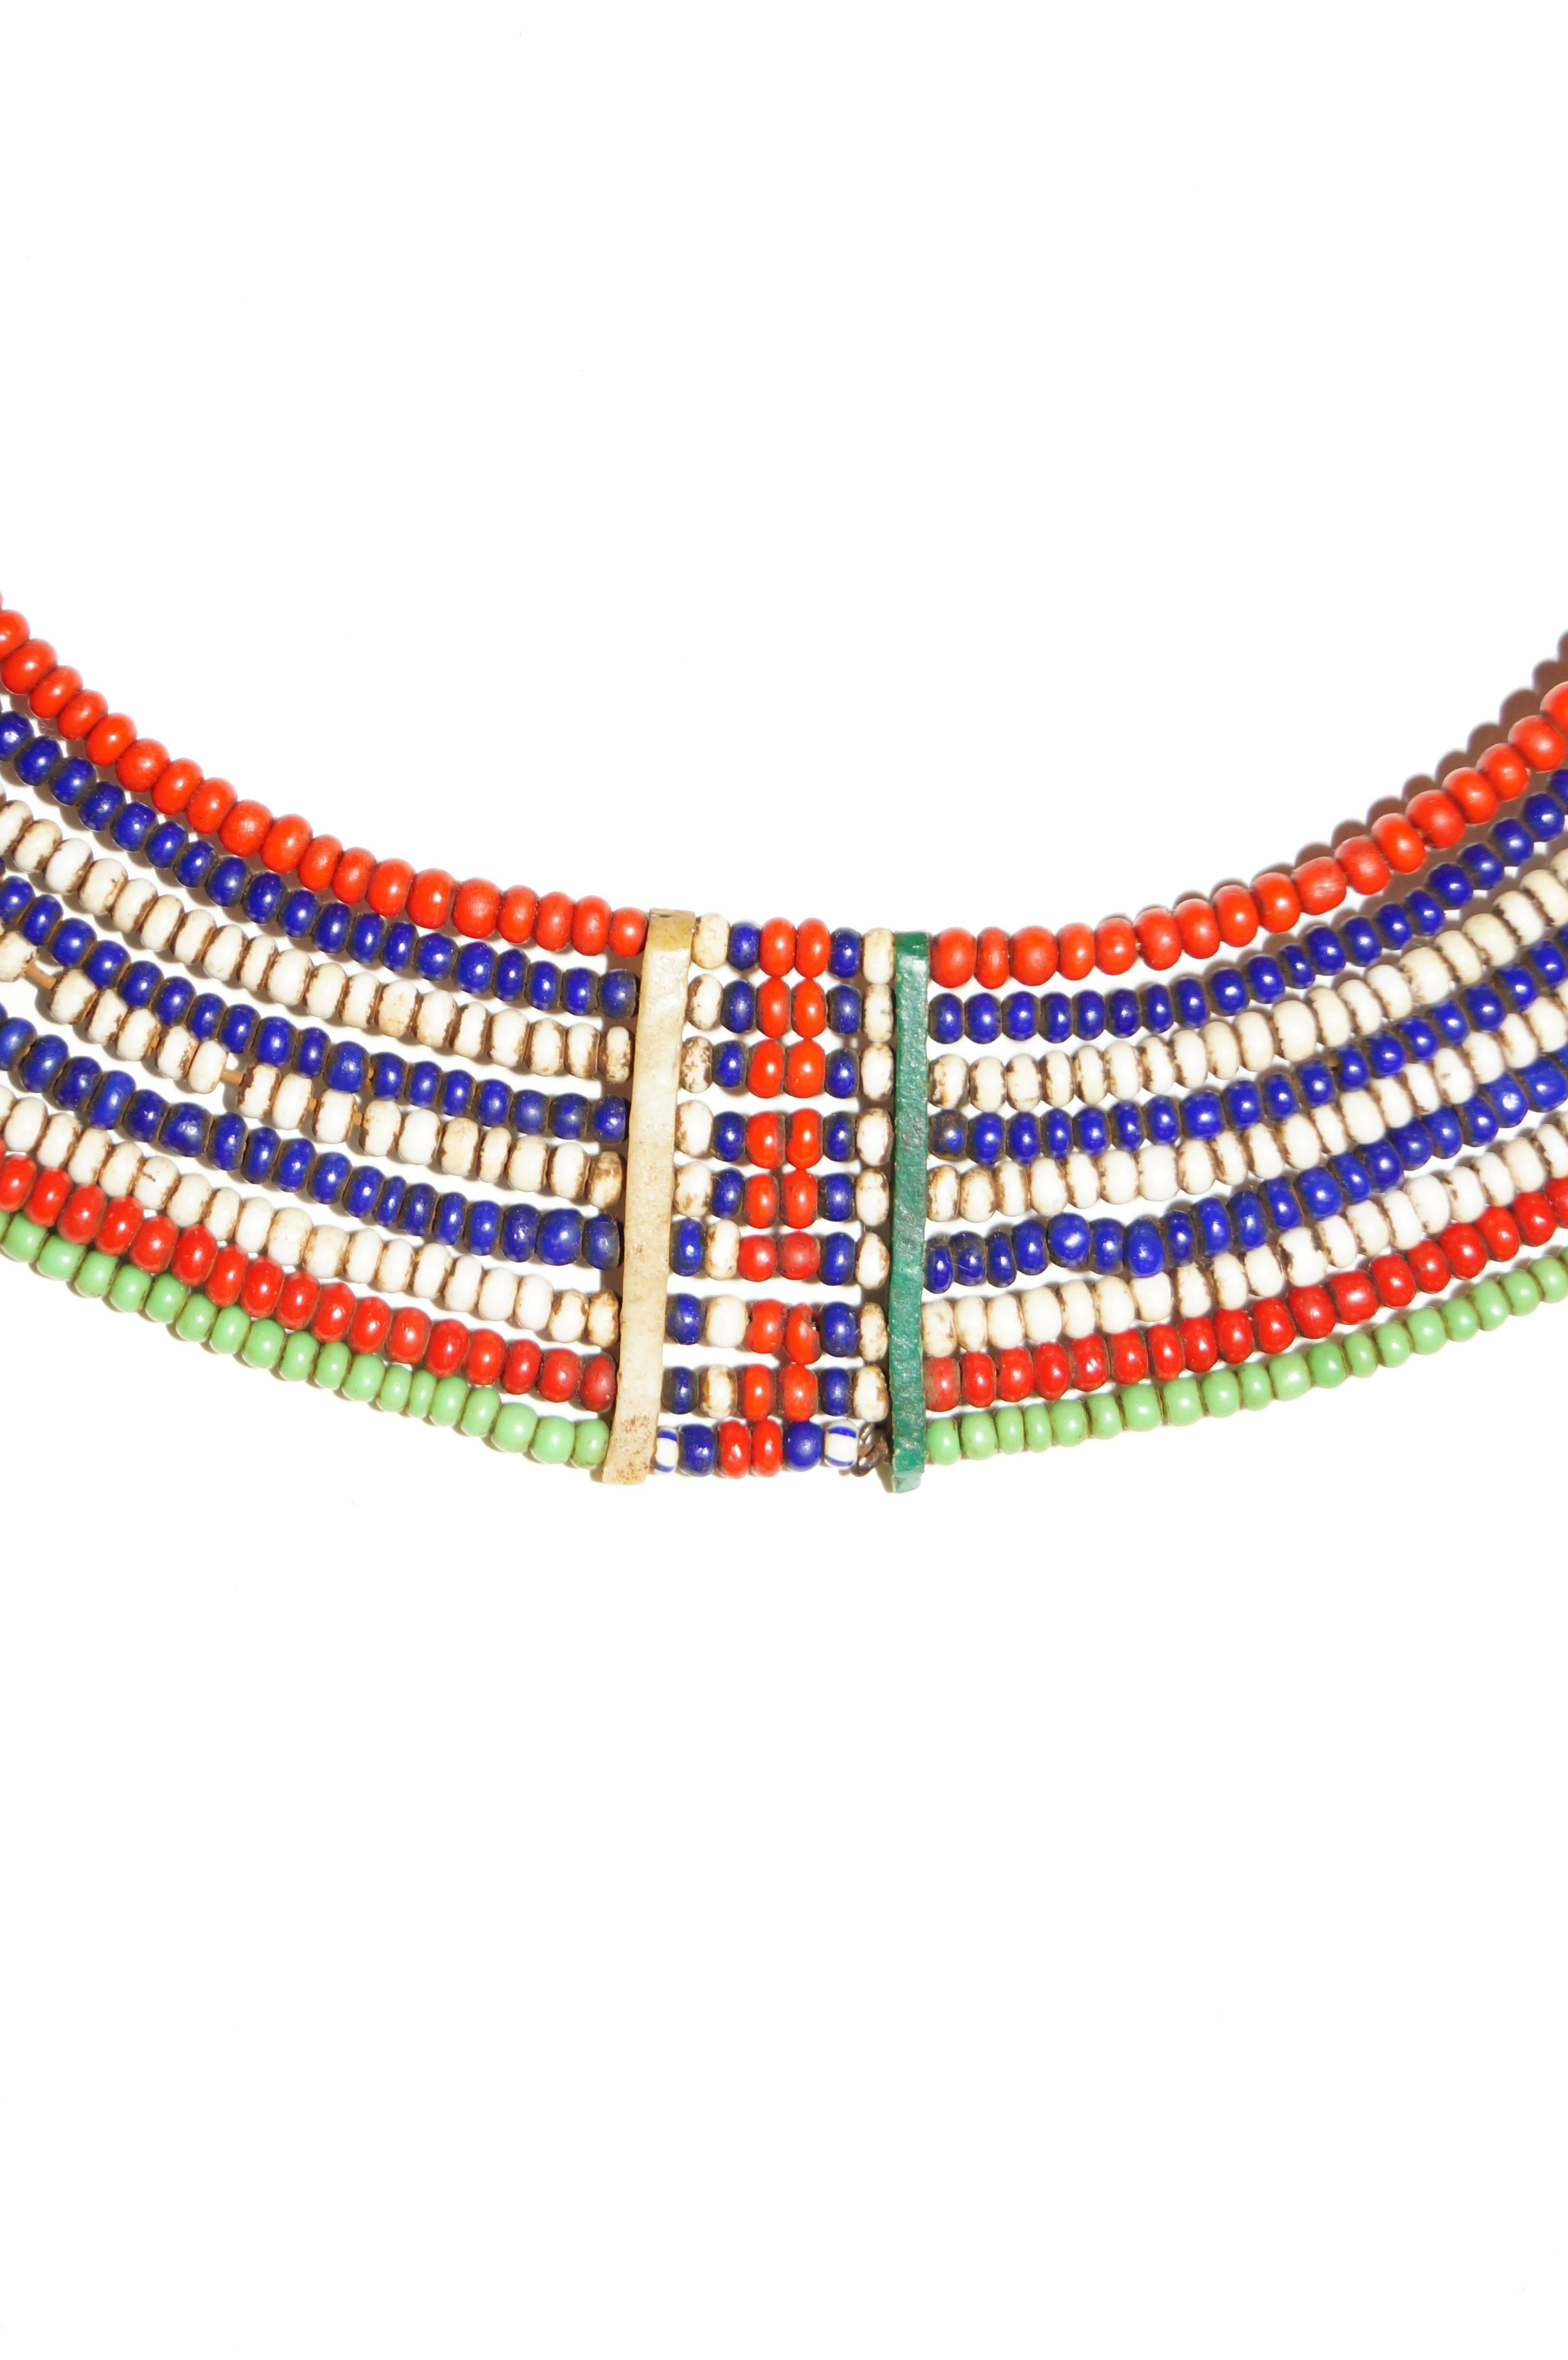 samburu necklace